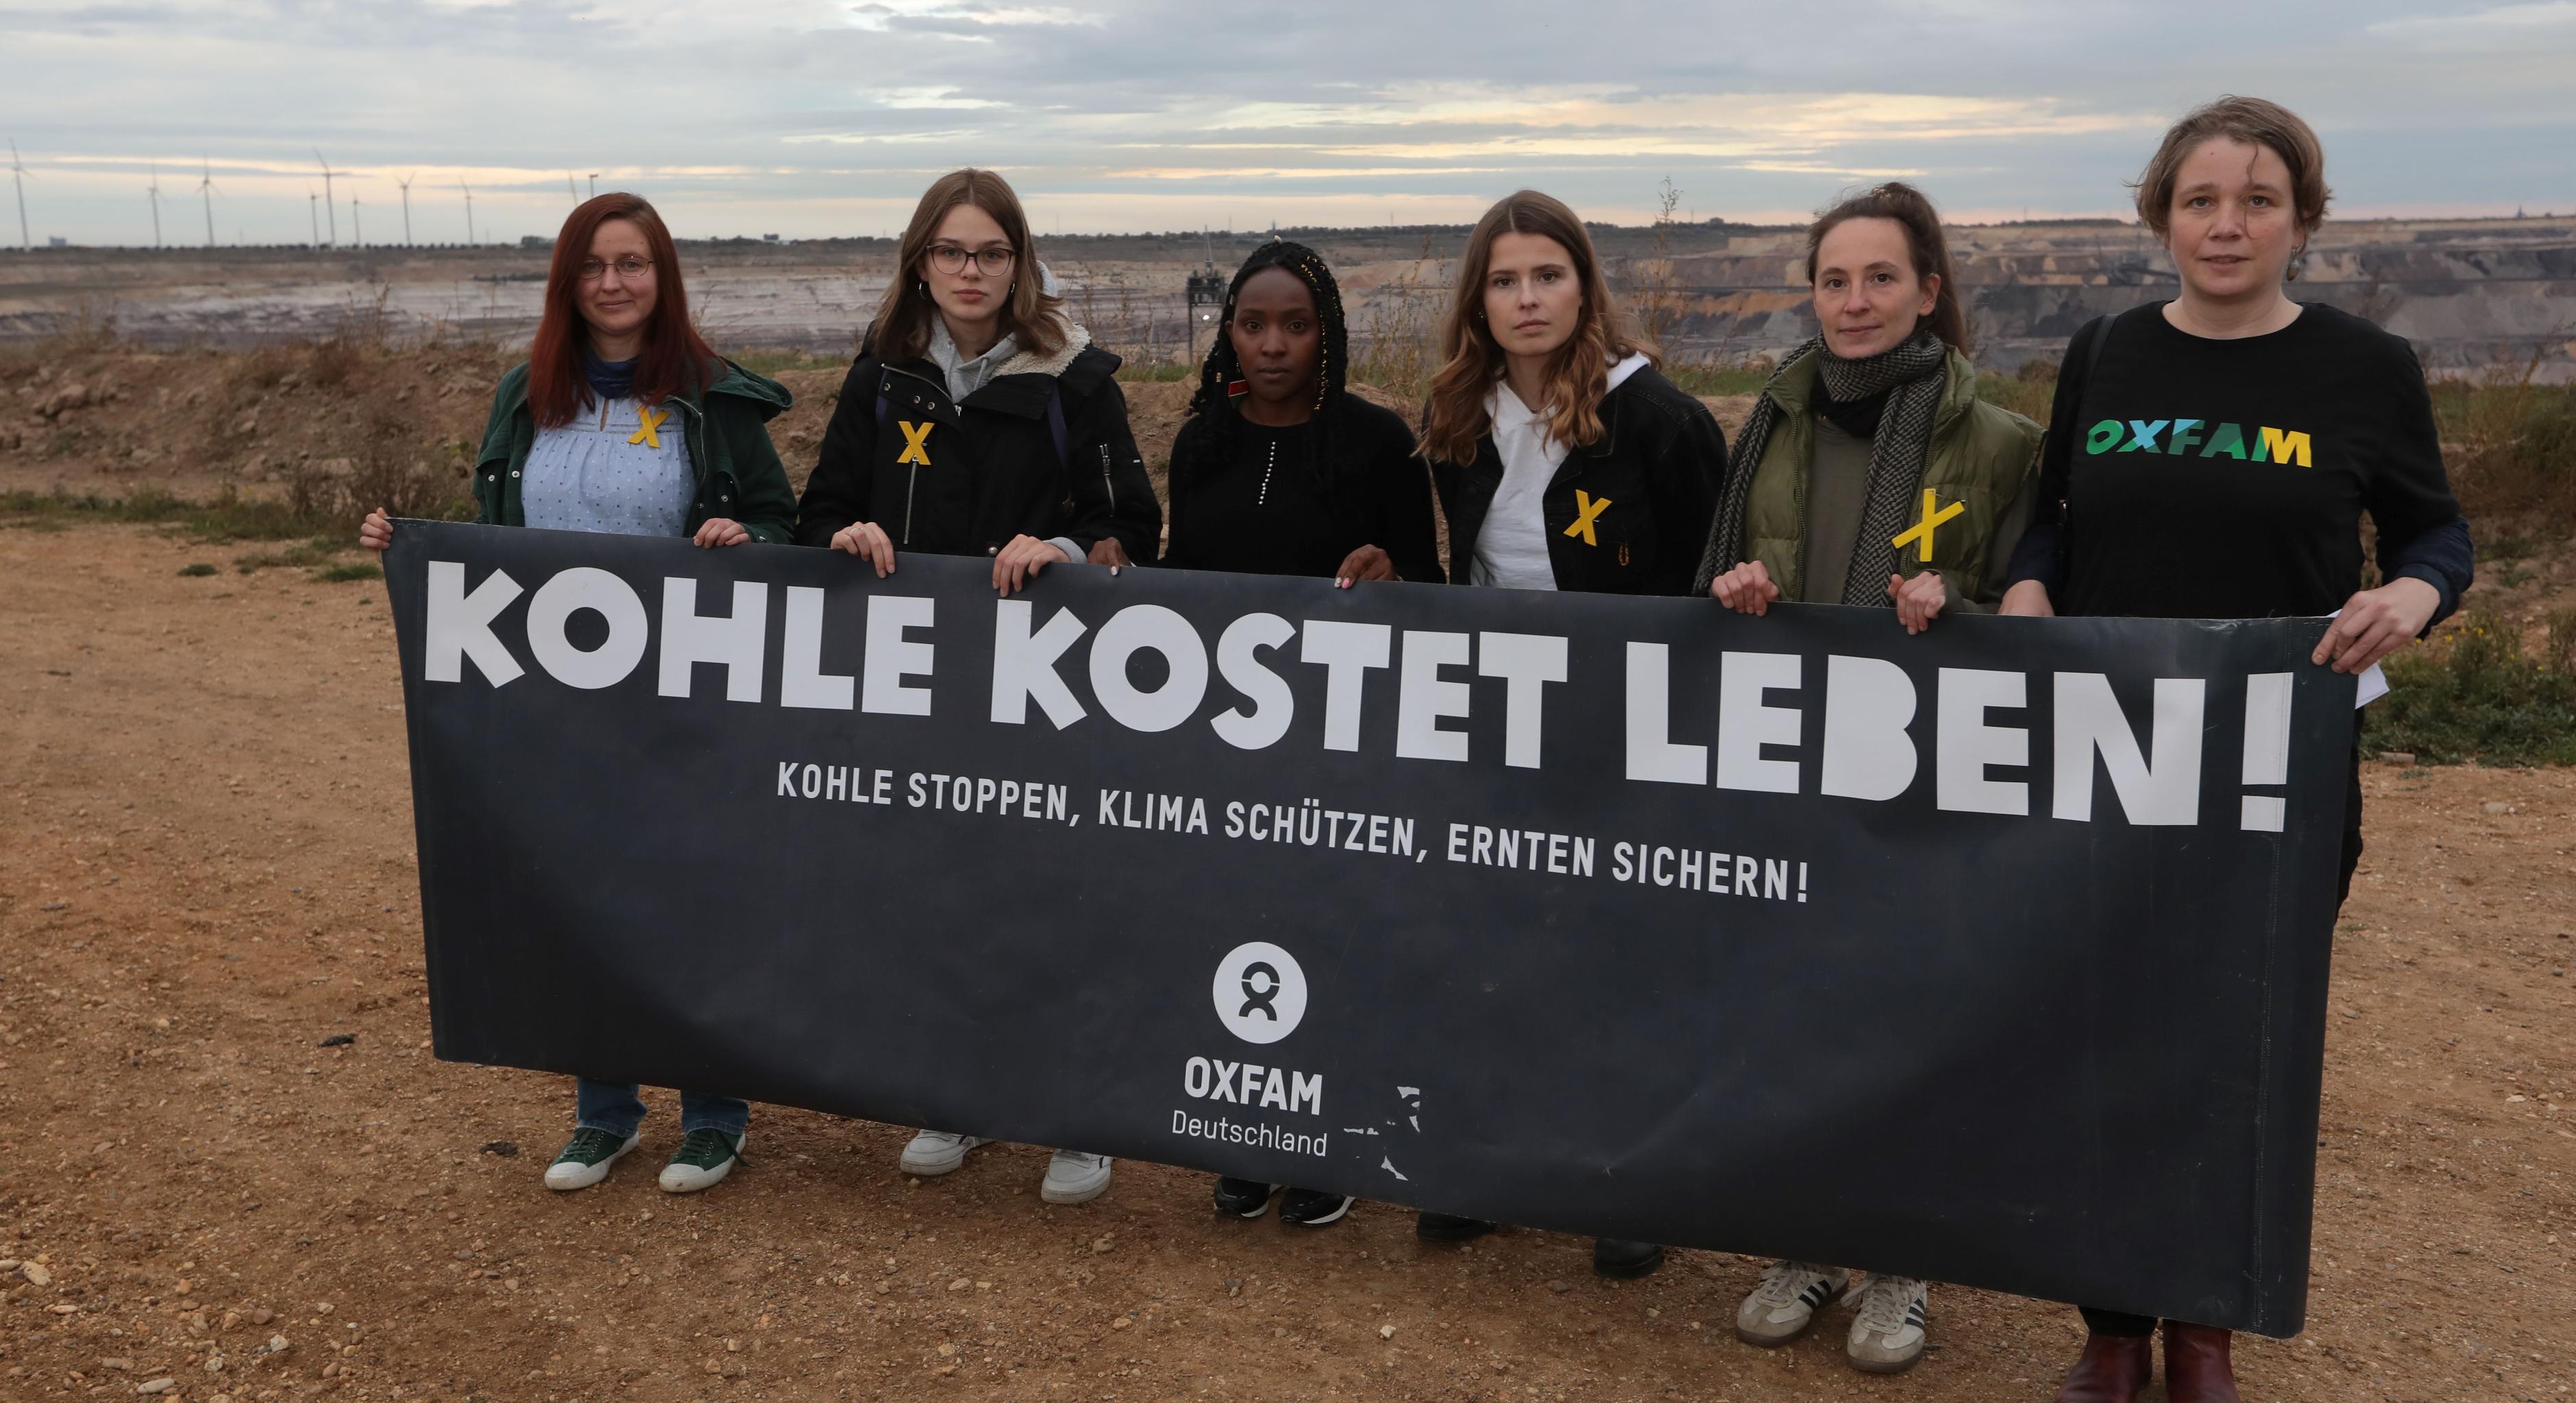 Sechs Frauen stehen mit einem schwarzen Banner in der Hand am Rand des Tagebaus Garzweiler. Auf dem Banner steht: Kohle kostet leben! Kohle stoppen, Klima schützen, Ernten sichern!